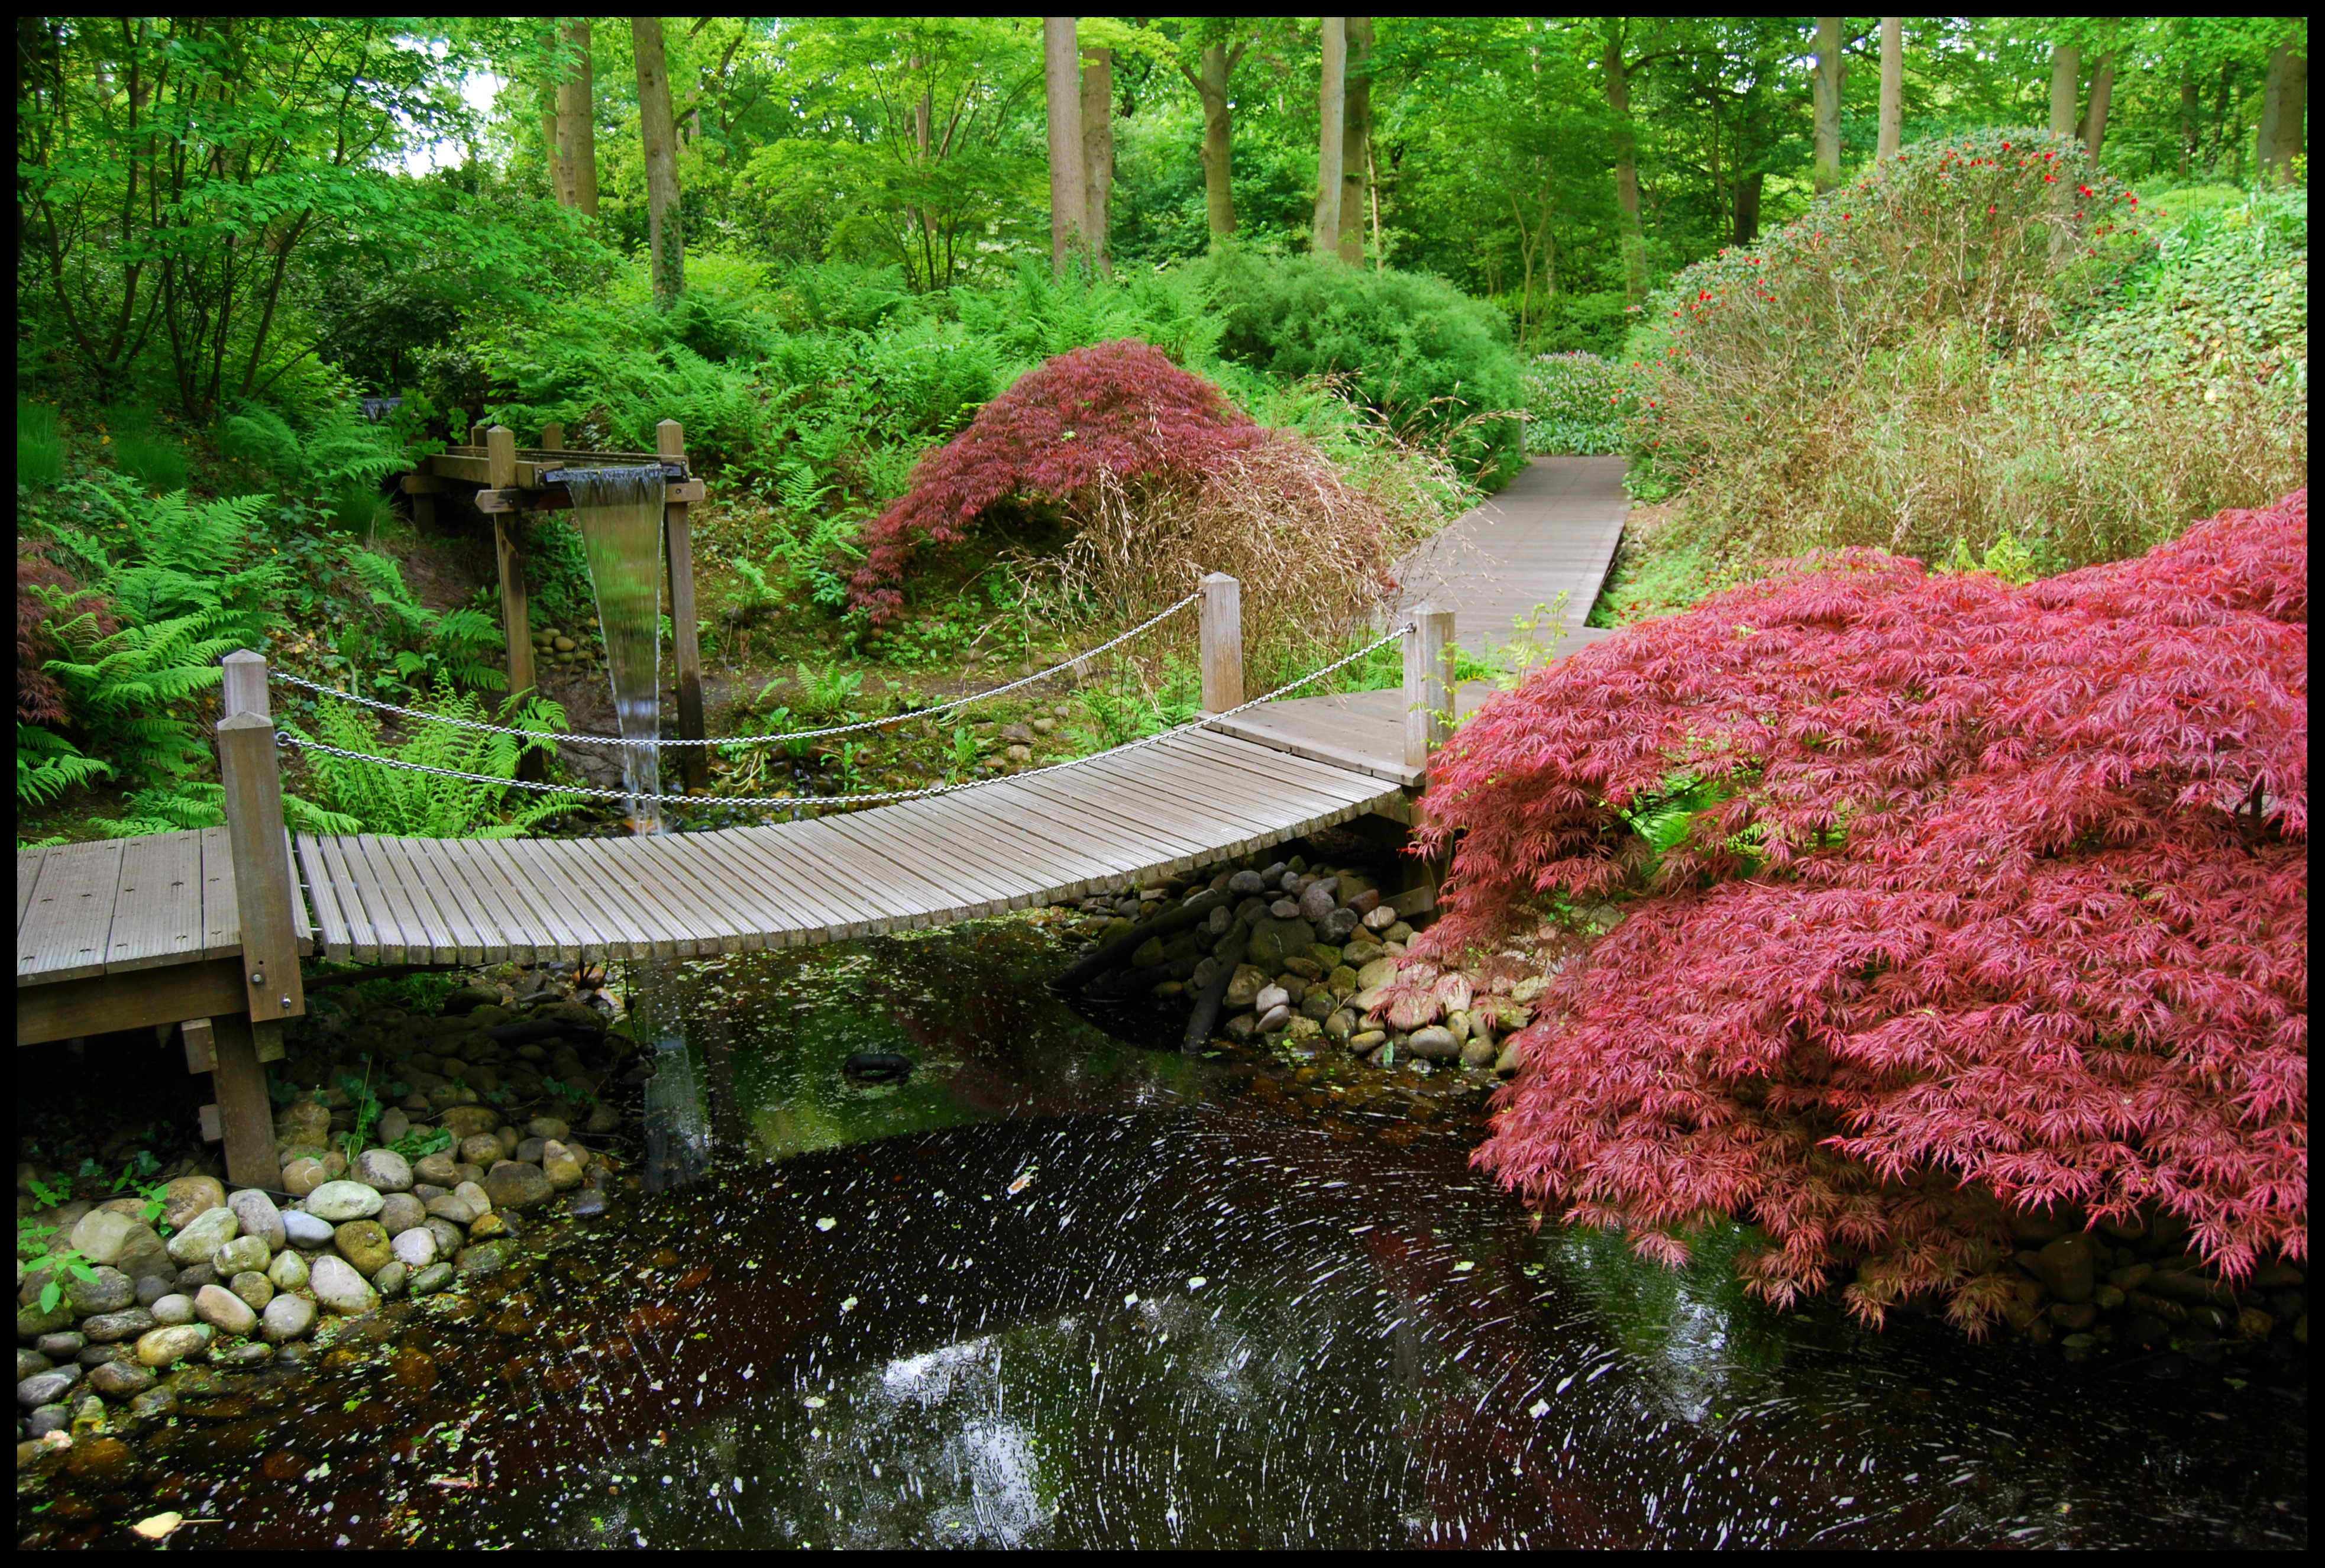 Забронировать столик в японском саду. Парк Клингендаел-японский сад. Сады Киото. Японский сад хиранива. Япония сады пруд мост.